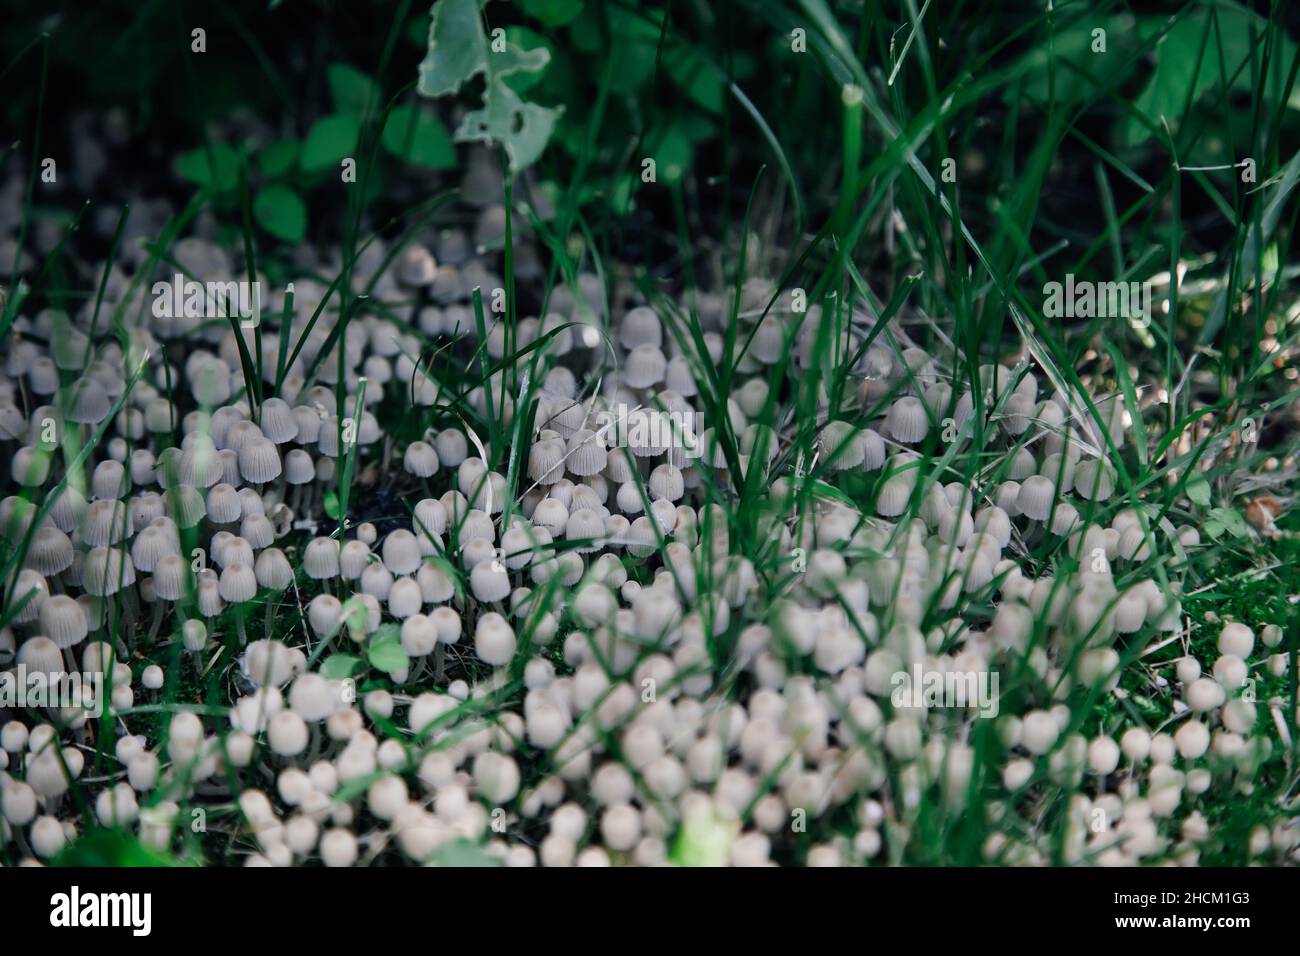 Grande quantité de petits champignons gris-blancs qui poussent parmi l'herbe couverte d'ombre provenant des plantes voisines pendant la journée en été.Cadeaux de la nature.La vie dans Banque D'Images